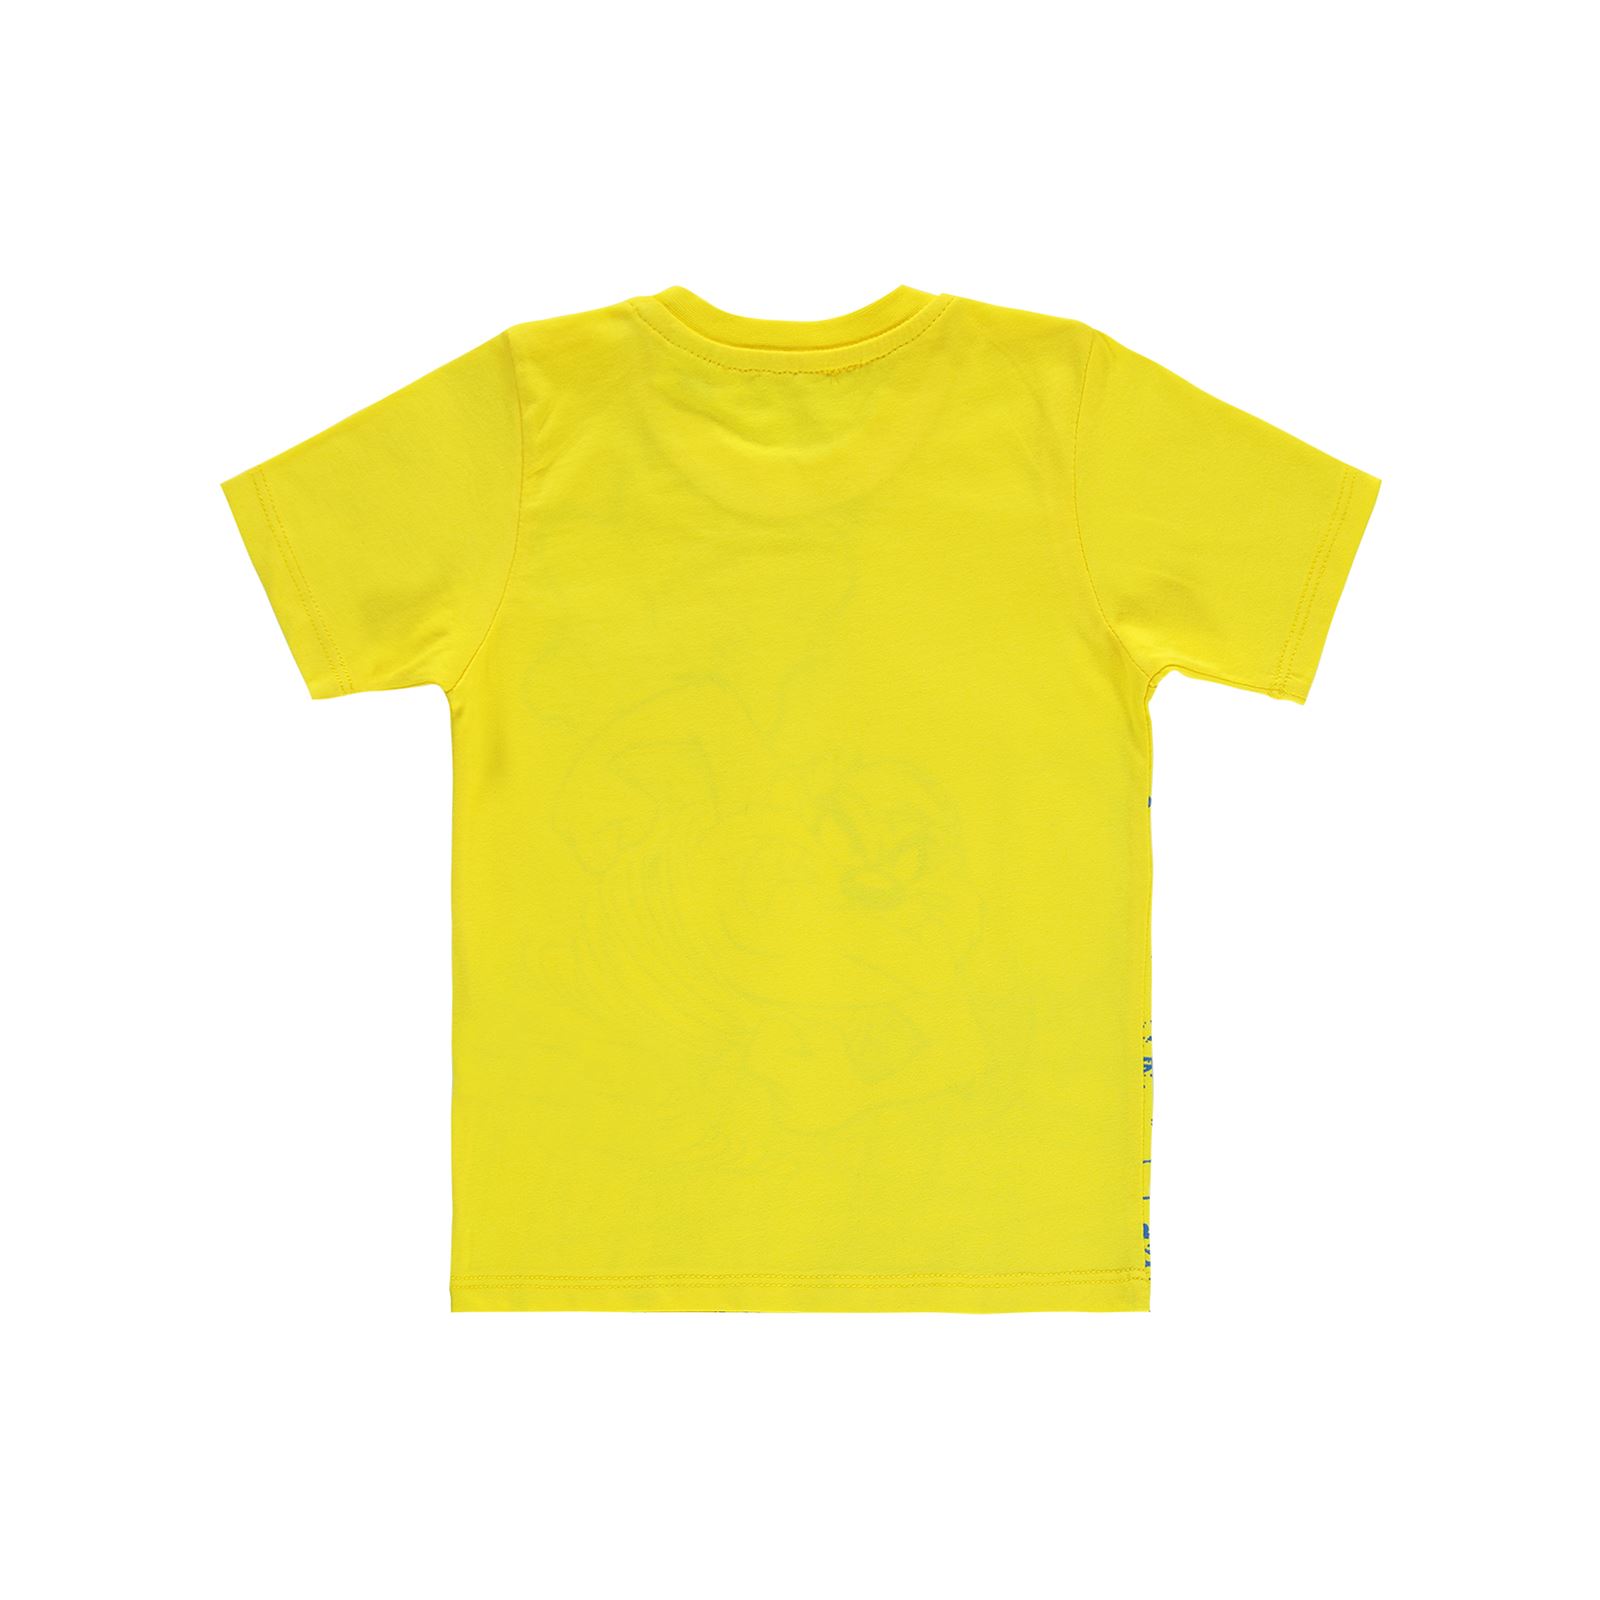 Tazmania Erkek Çocuk Tişört 2-5 Yaş Sarı